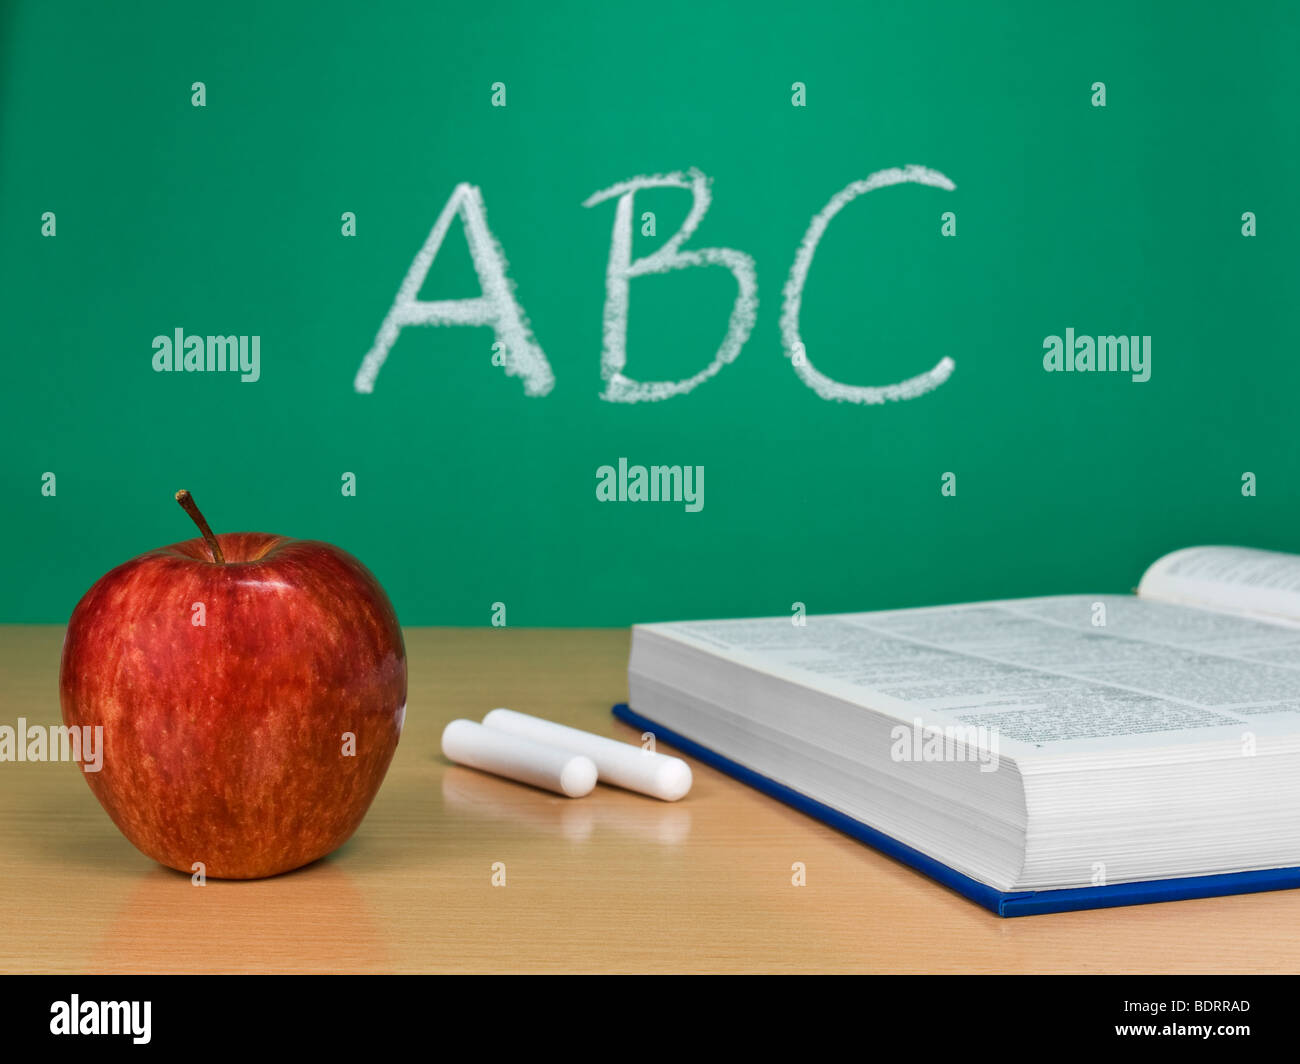 ABC scritto su una lavagna con un Apple, un libro e alcuni gessi. Foto Stock